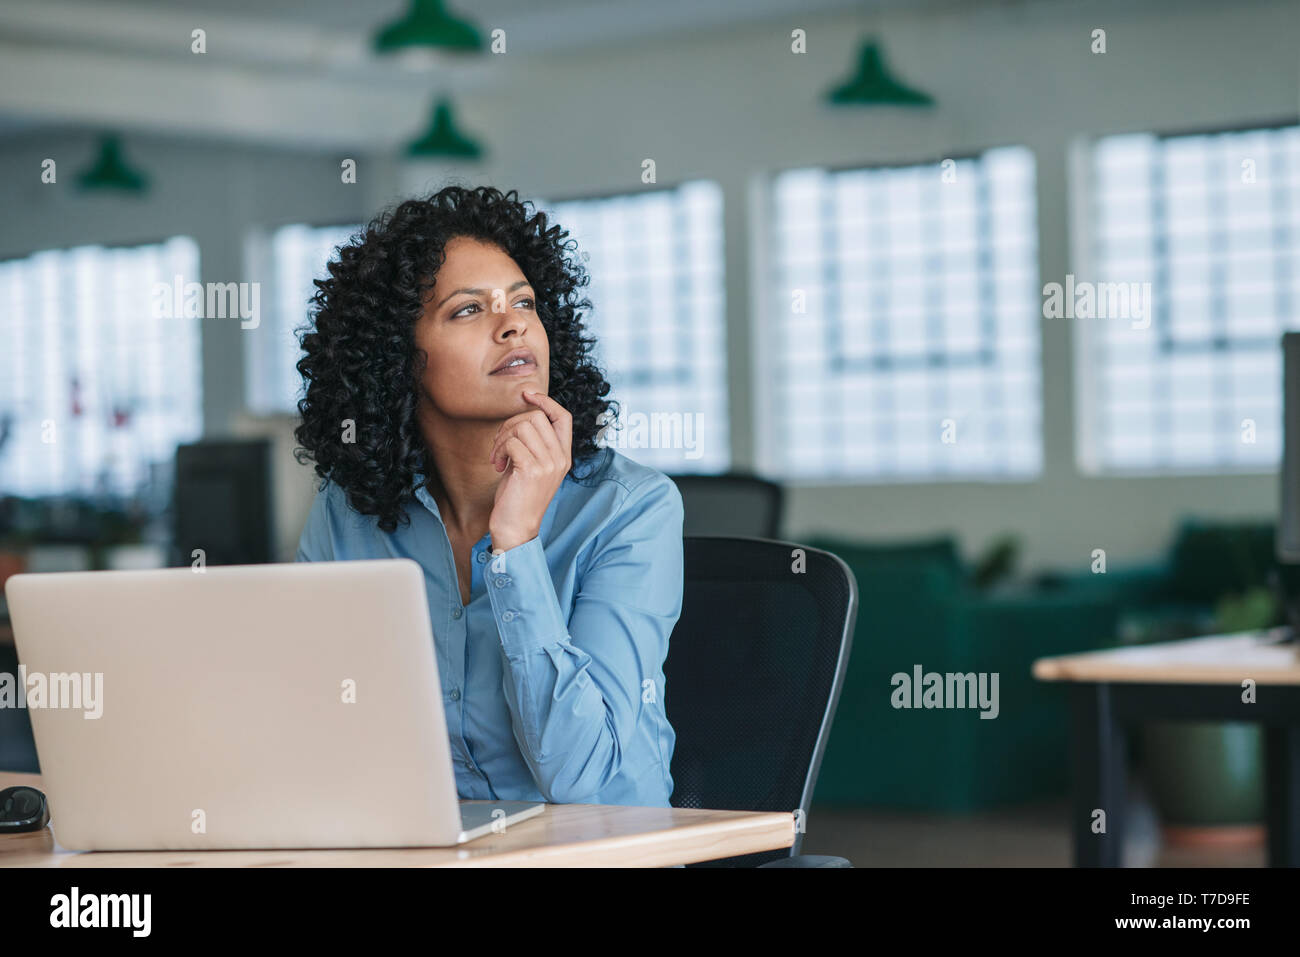 Young businesswoman thinking lors de l'utilisation d'un ordinateur portable au travail Banque D'Images